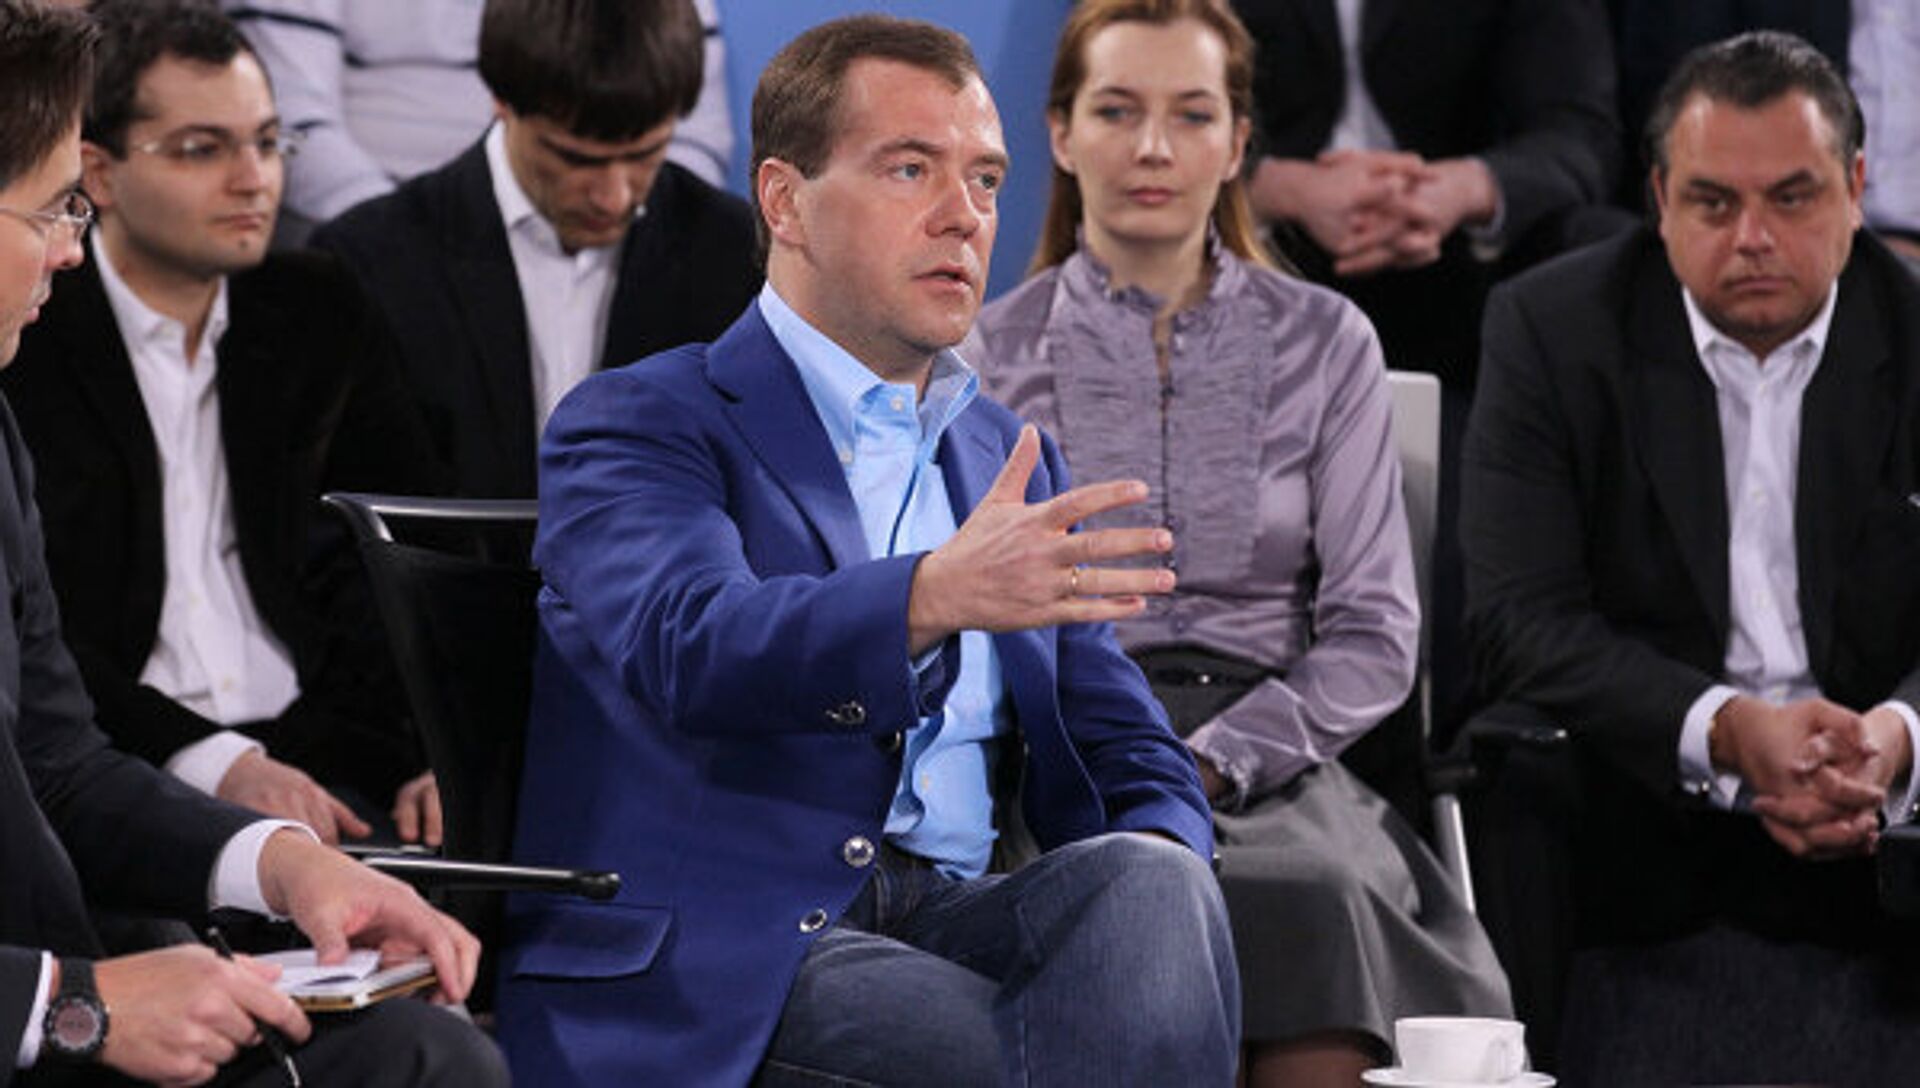 Выступление медведева в сочи. Выступление Медведева. Выступление Медведева на фоне карты Российской Европы.. Медведев выступает на сцене. Карта при выступлении Медведева.